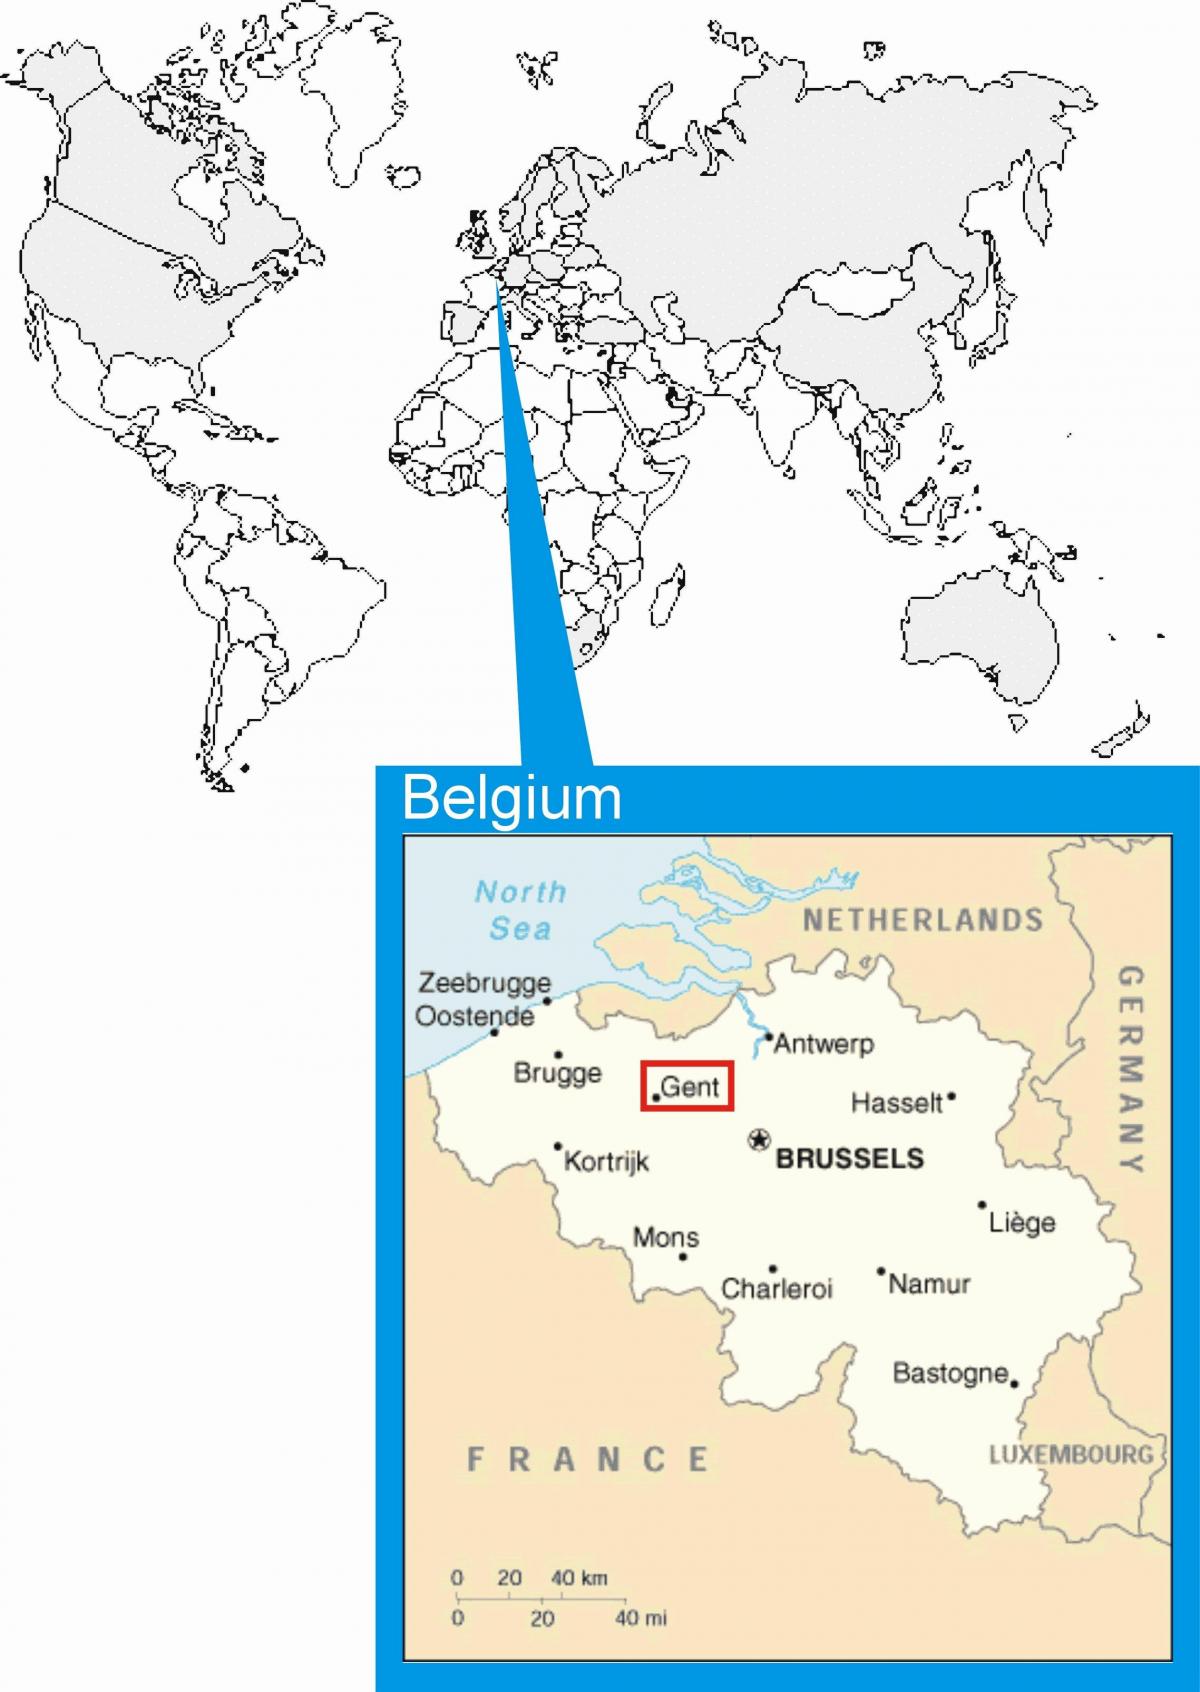 Bruxelles mappa del mondo